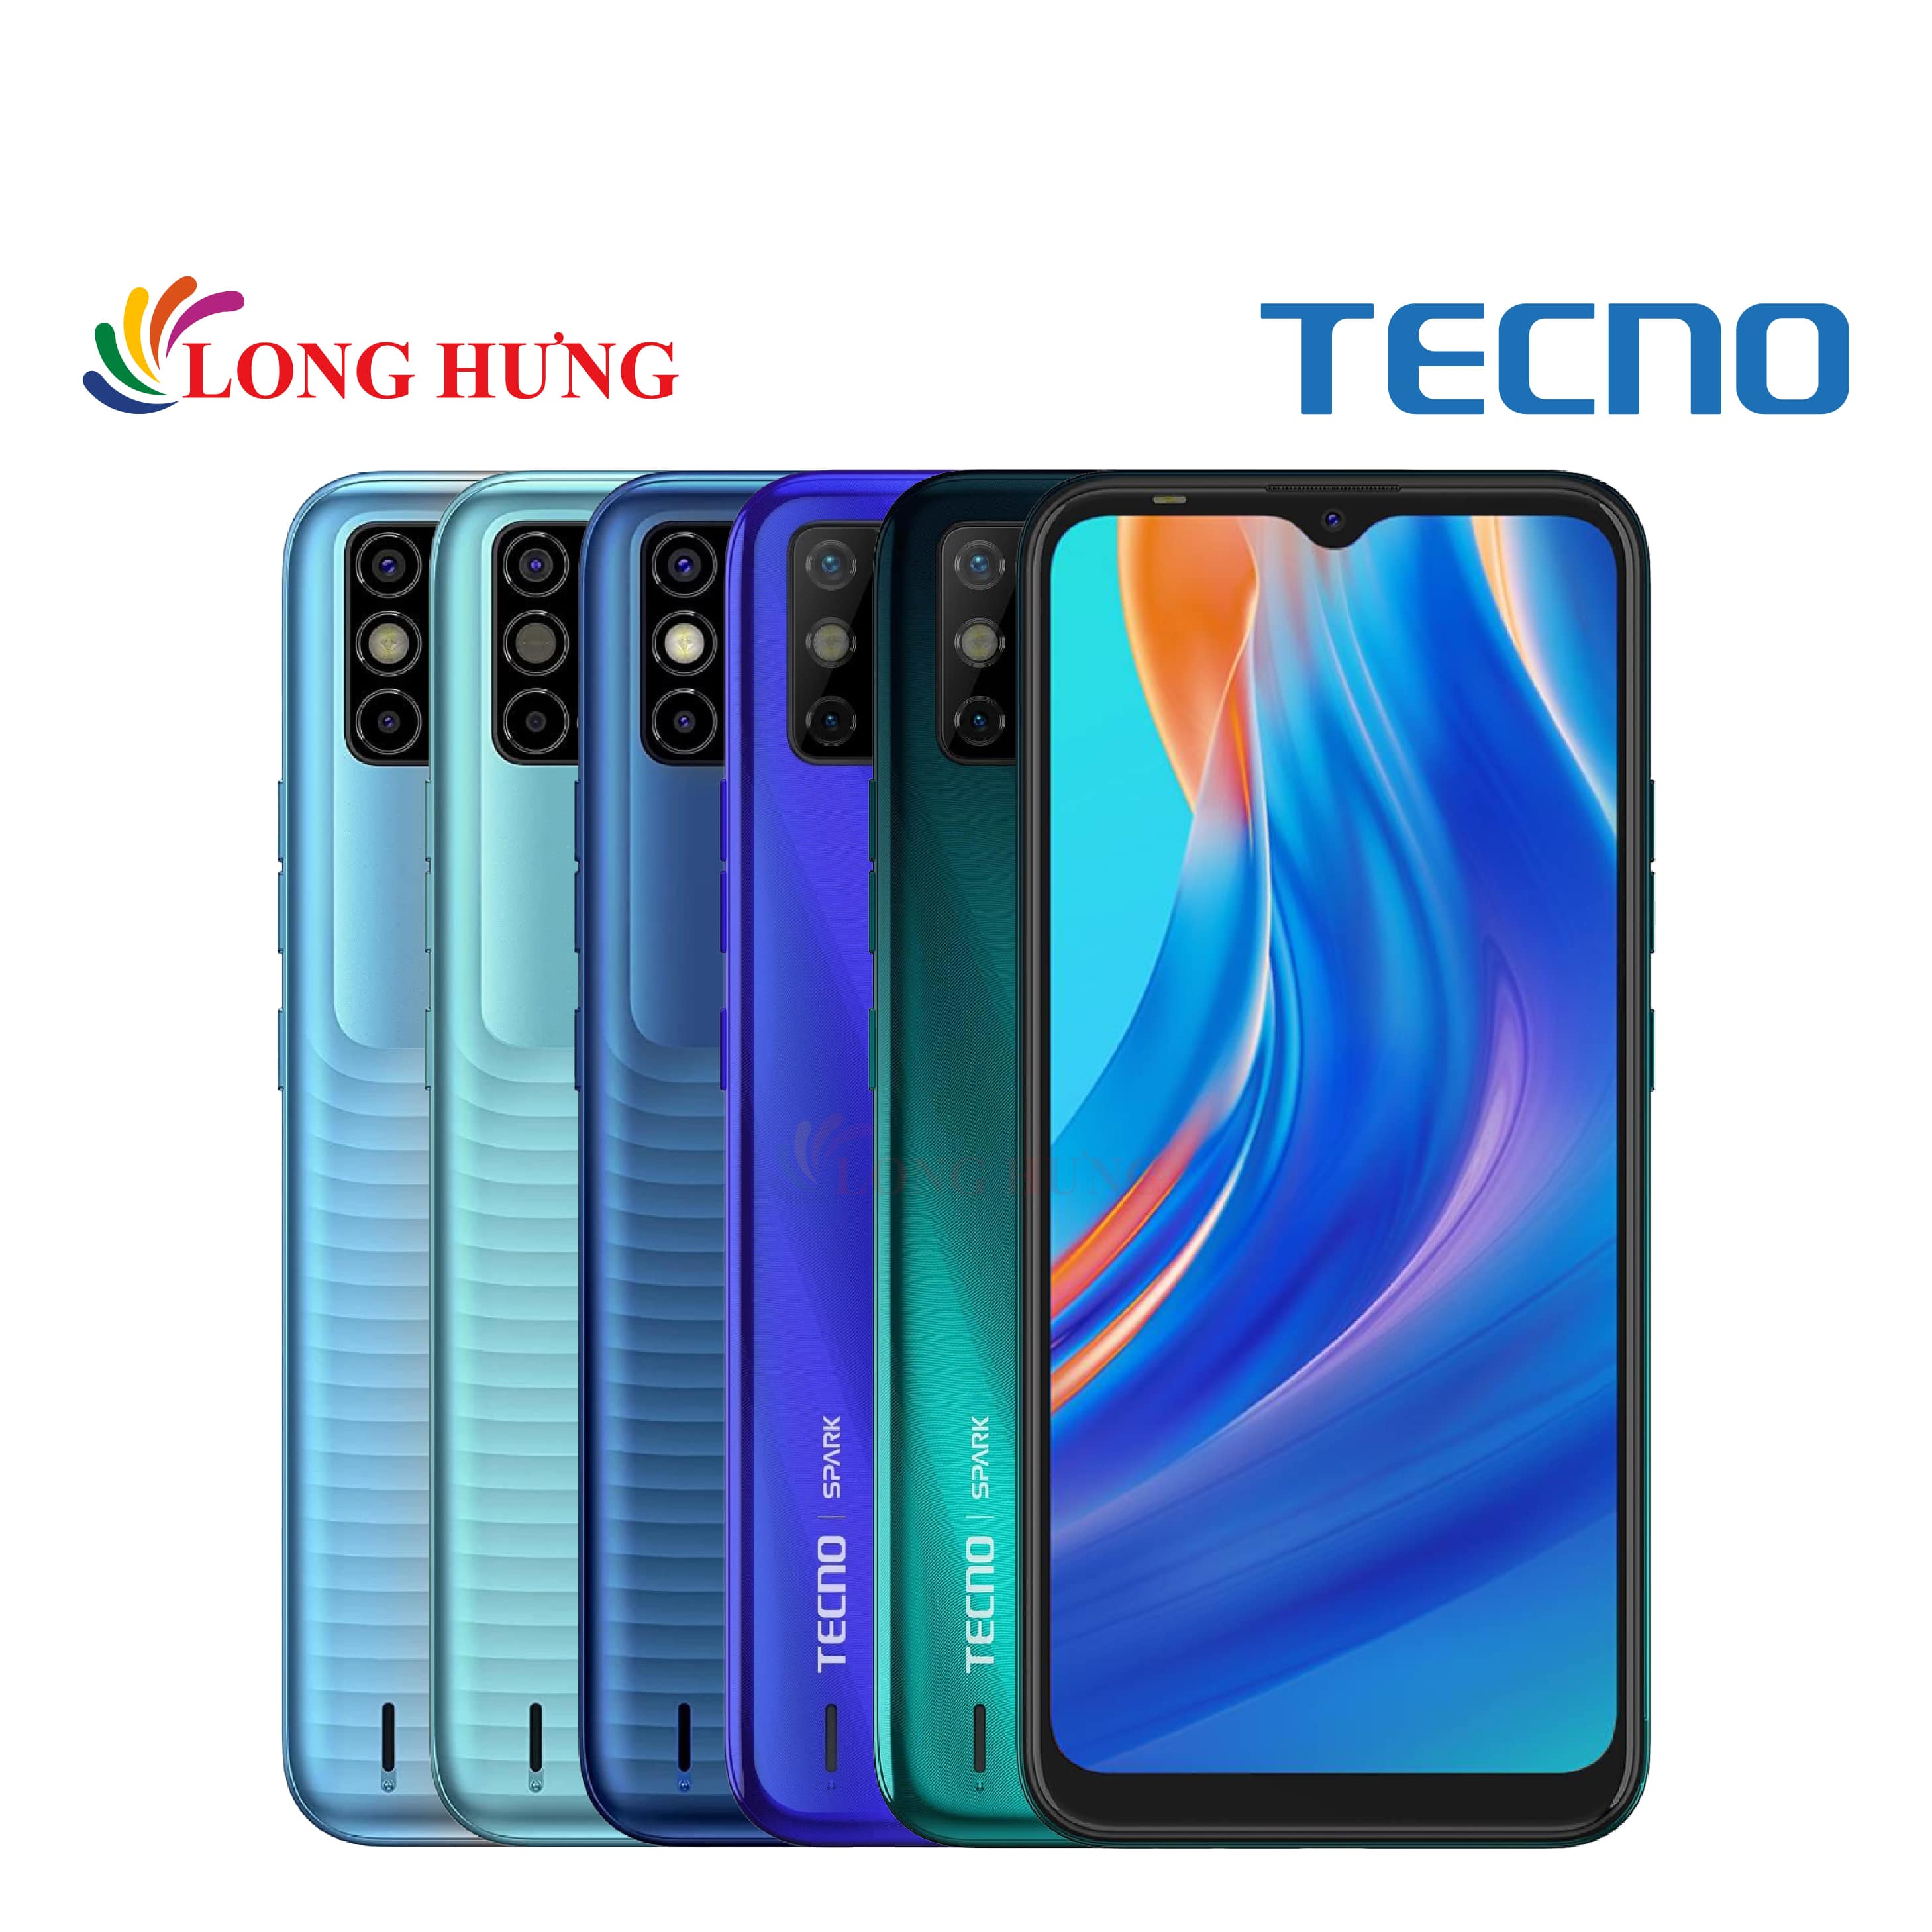 Điện thoại TECNO Spark 6 Go (4GB/64GB) - Hàng chính hãng - Màn hình lớn 6.52 inch, thiết kế độc đáo, viên pin sử dụng thoải mái